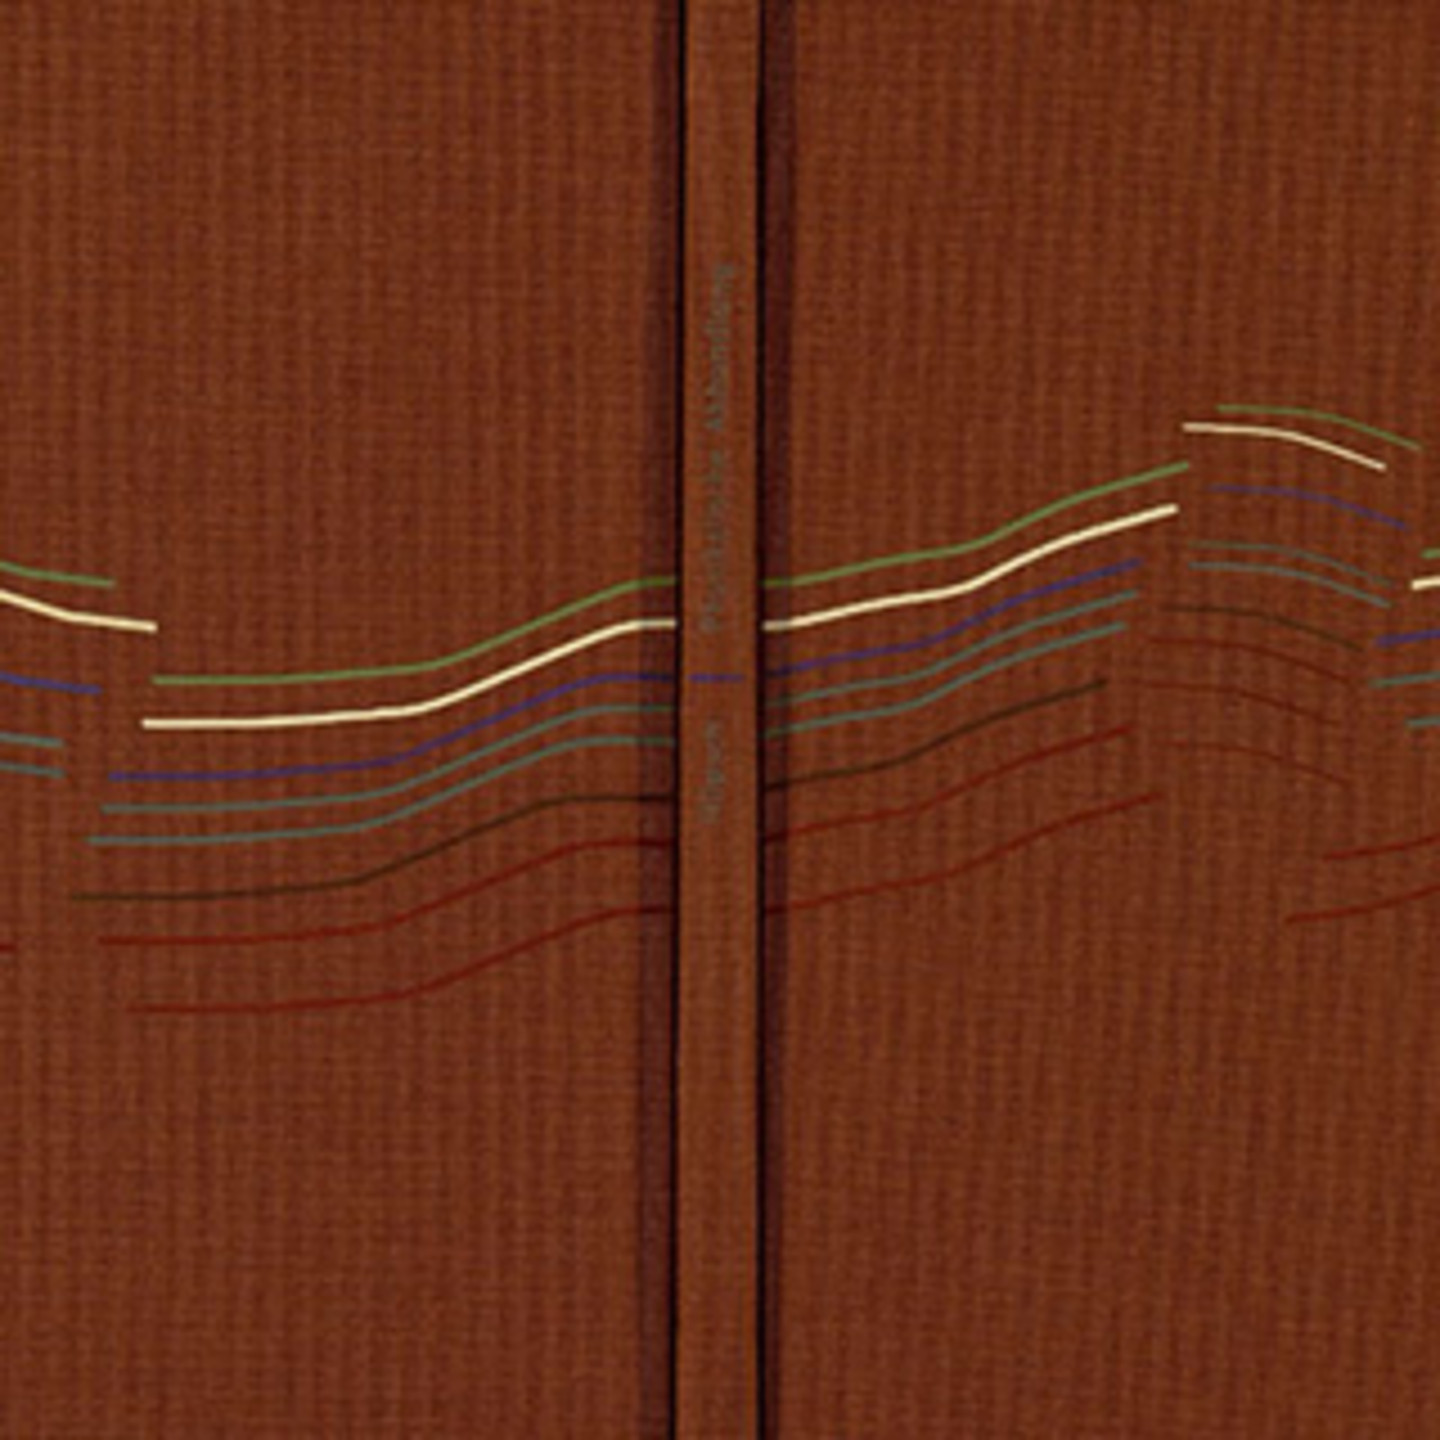 Dunkelrotes Buch mit abstrakten feinen Linien.